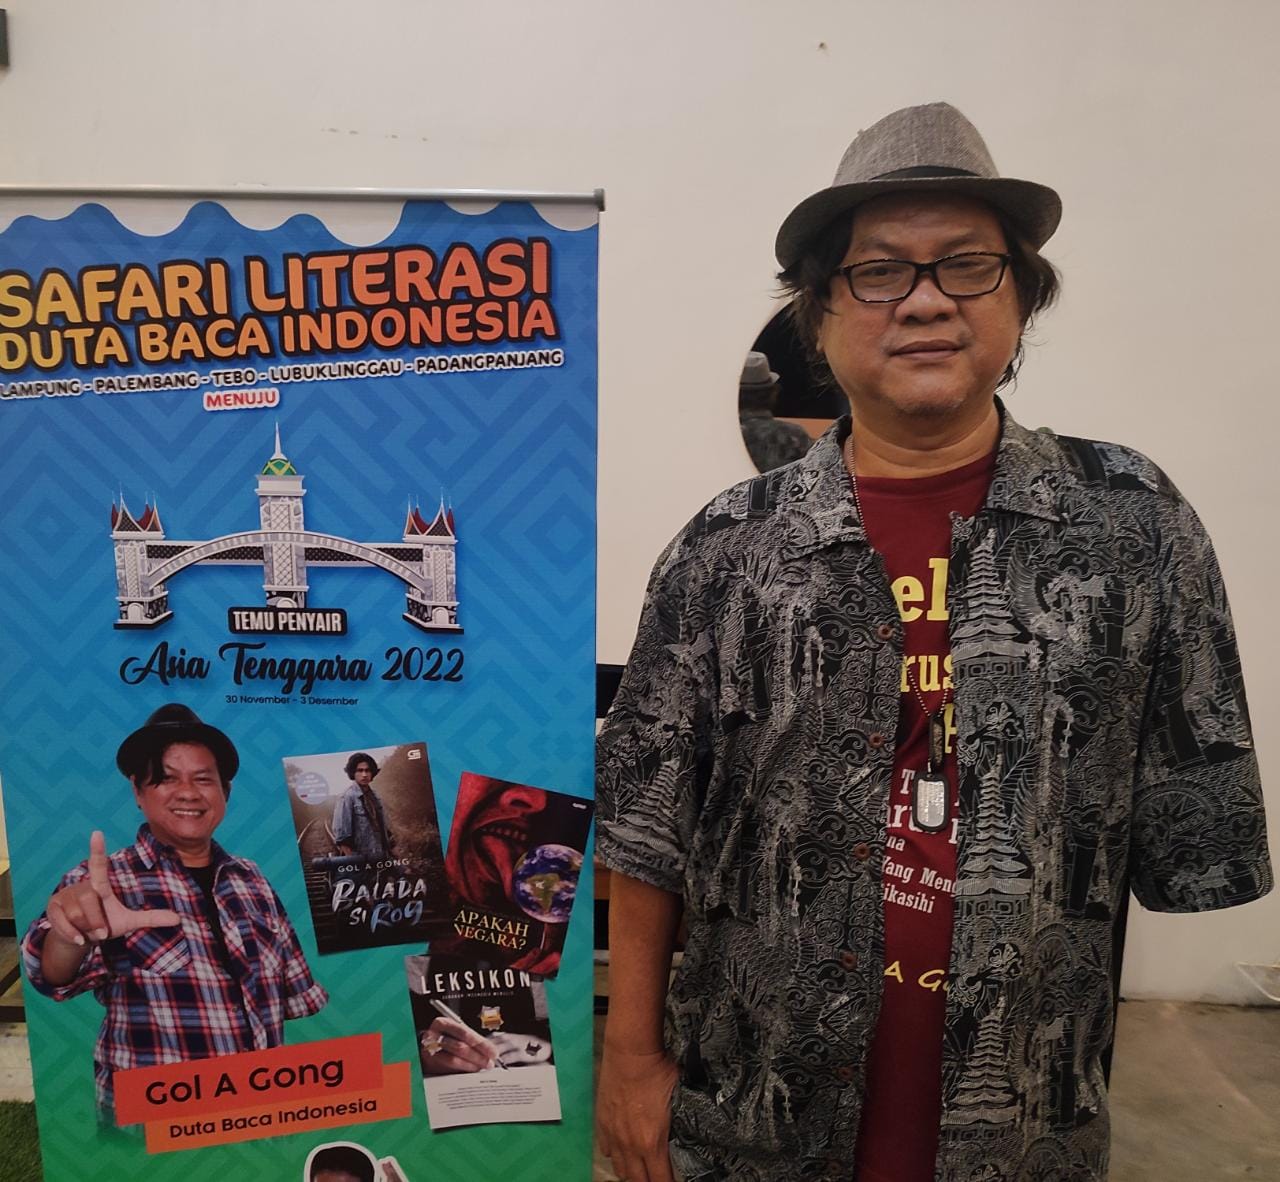 Versi Duta Baca Indonesia, Literasi Indonesia Berada Pada Angka Baik